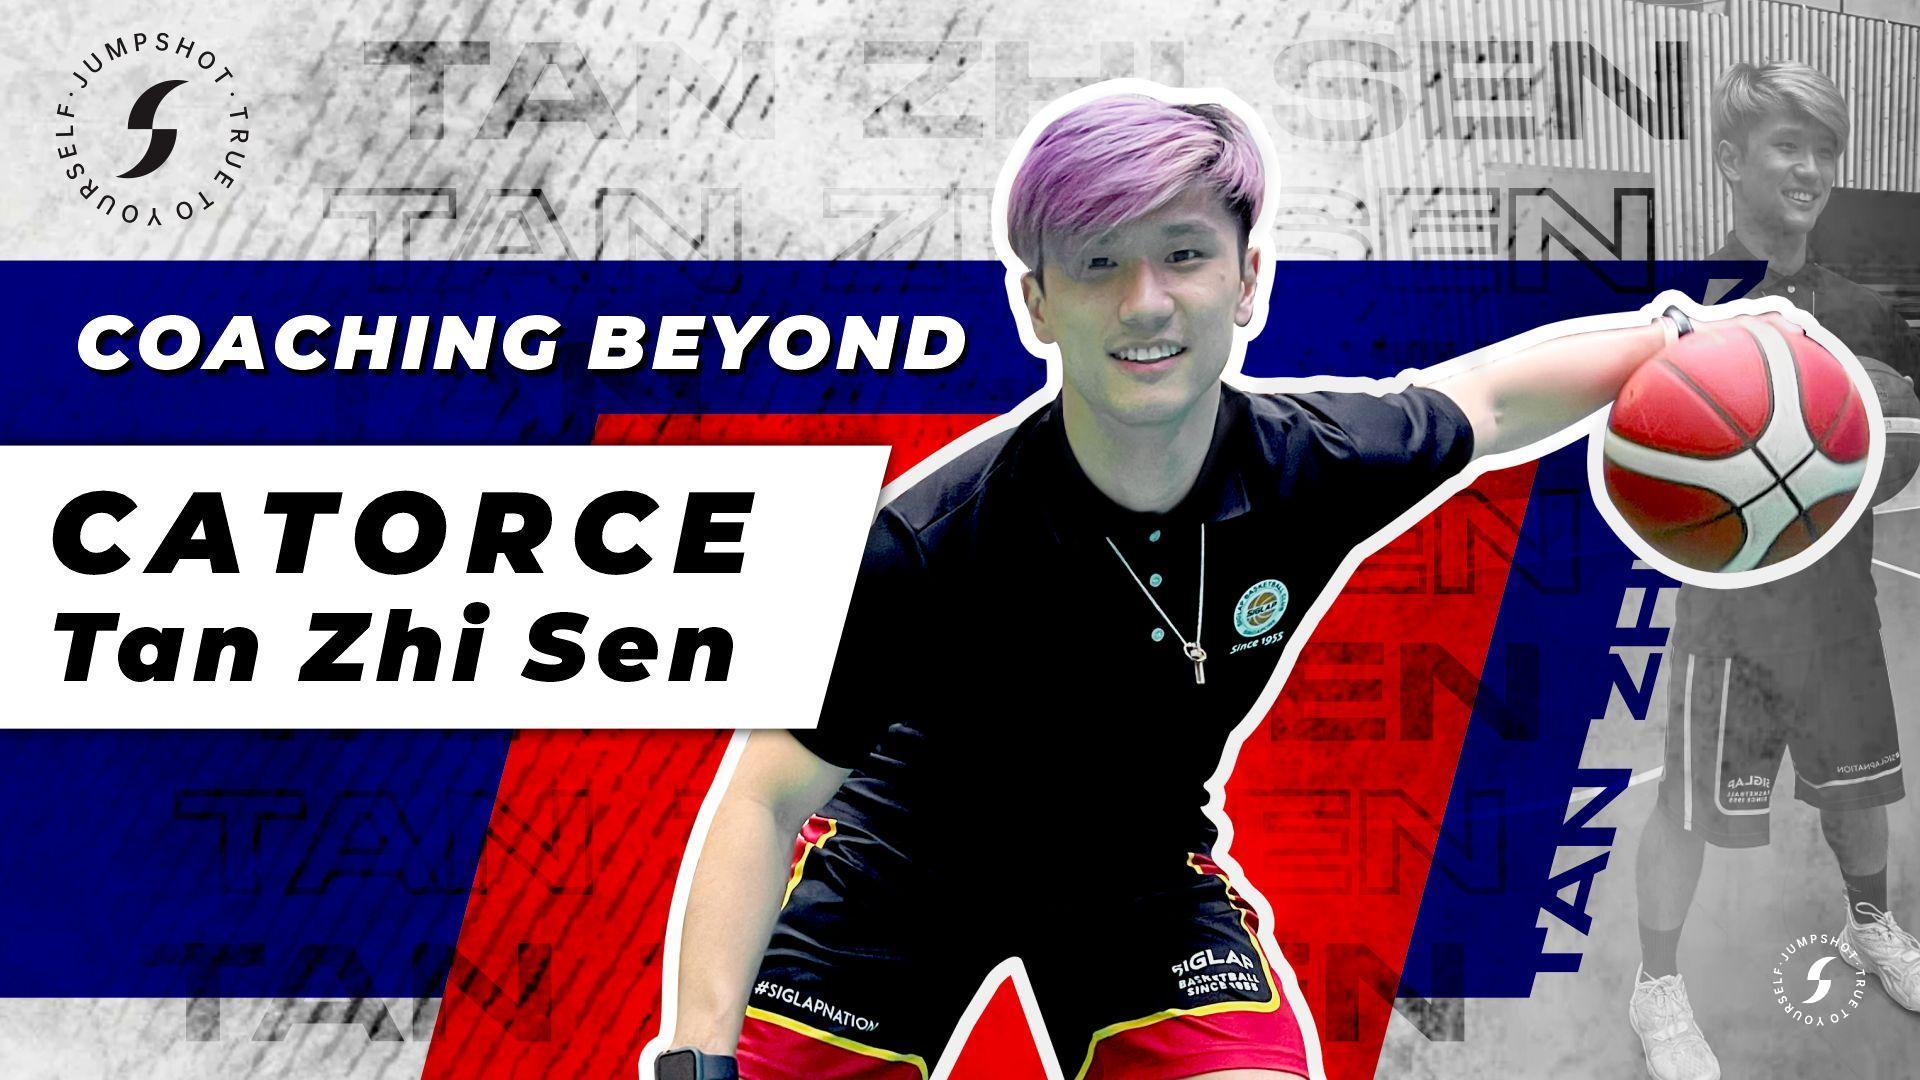 [WATCH NOW] Coaching Beyond: Zhi Sen